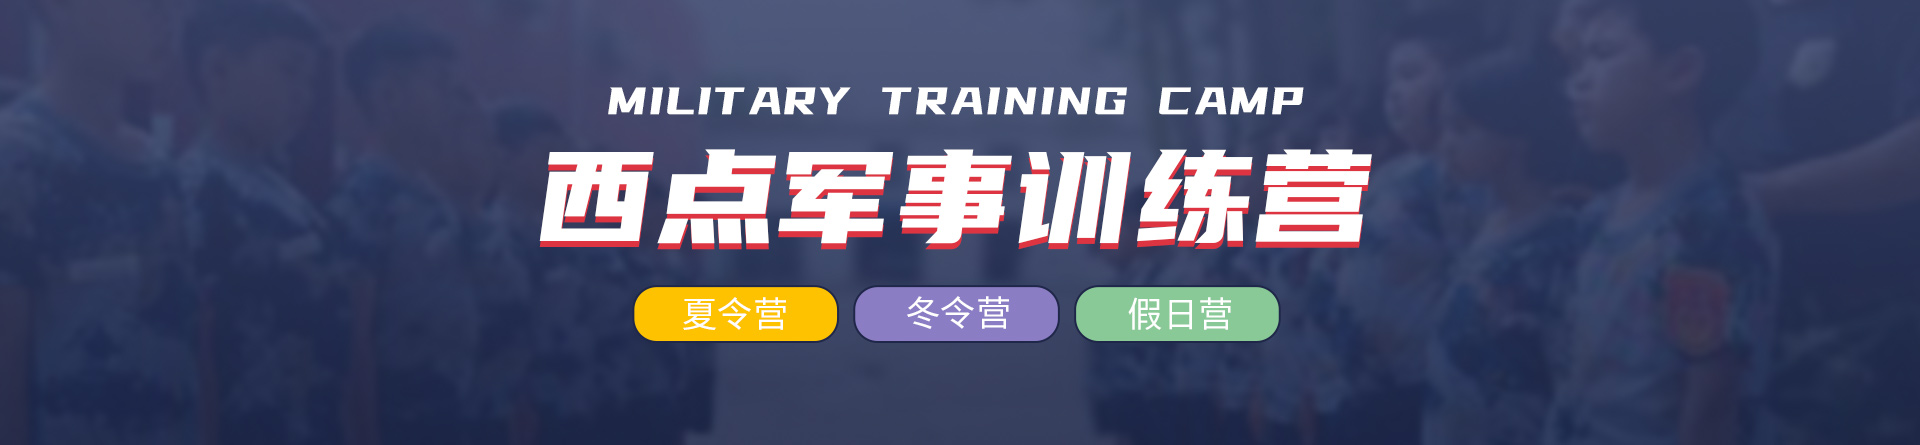 北京西点军事训练